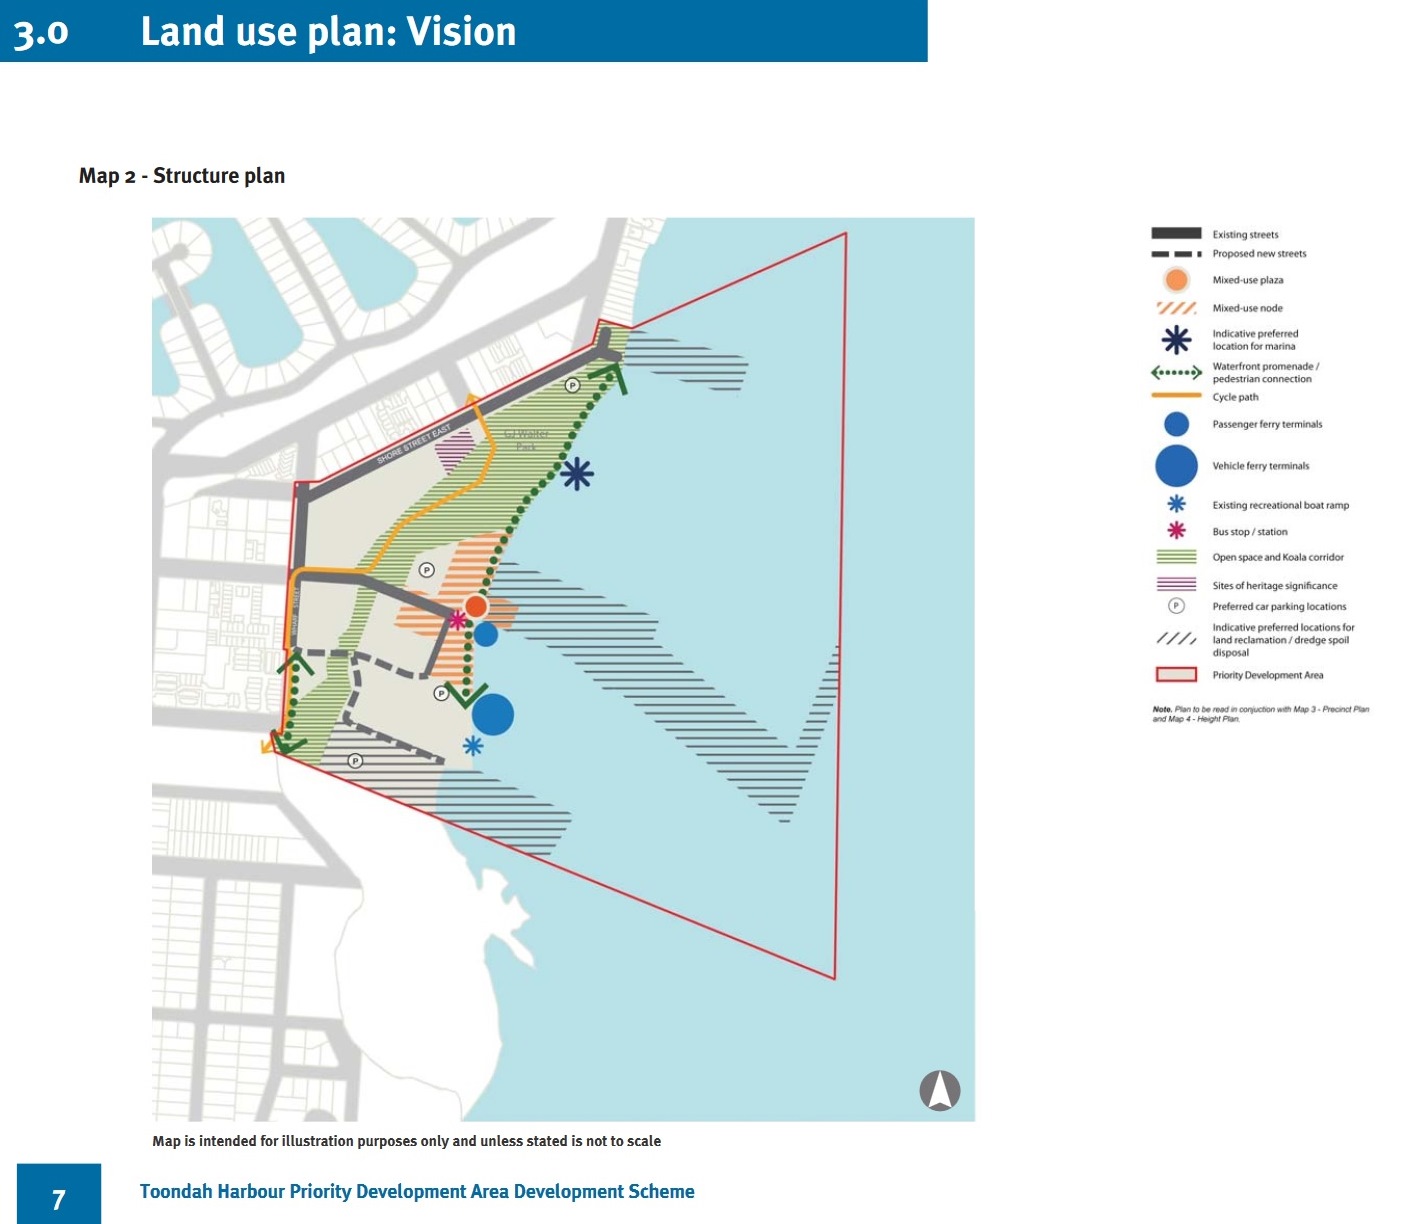 Toondah Harbour PDA final development scheme